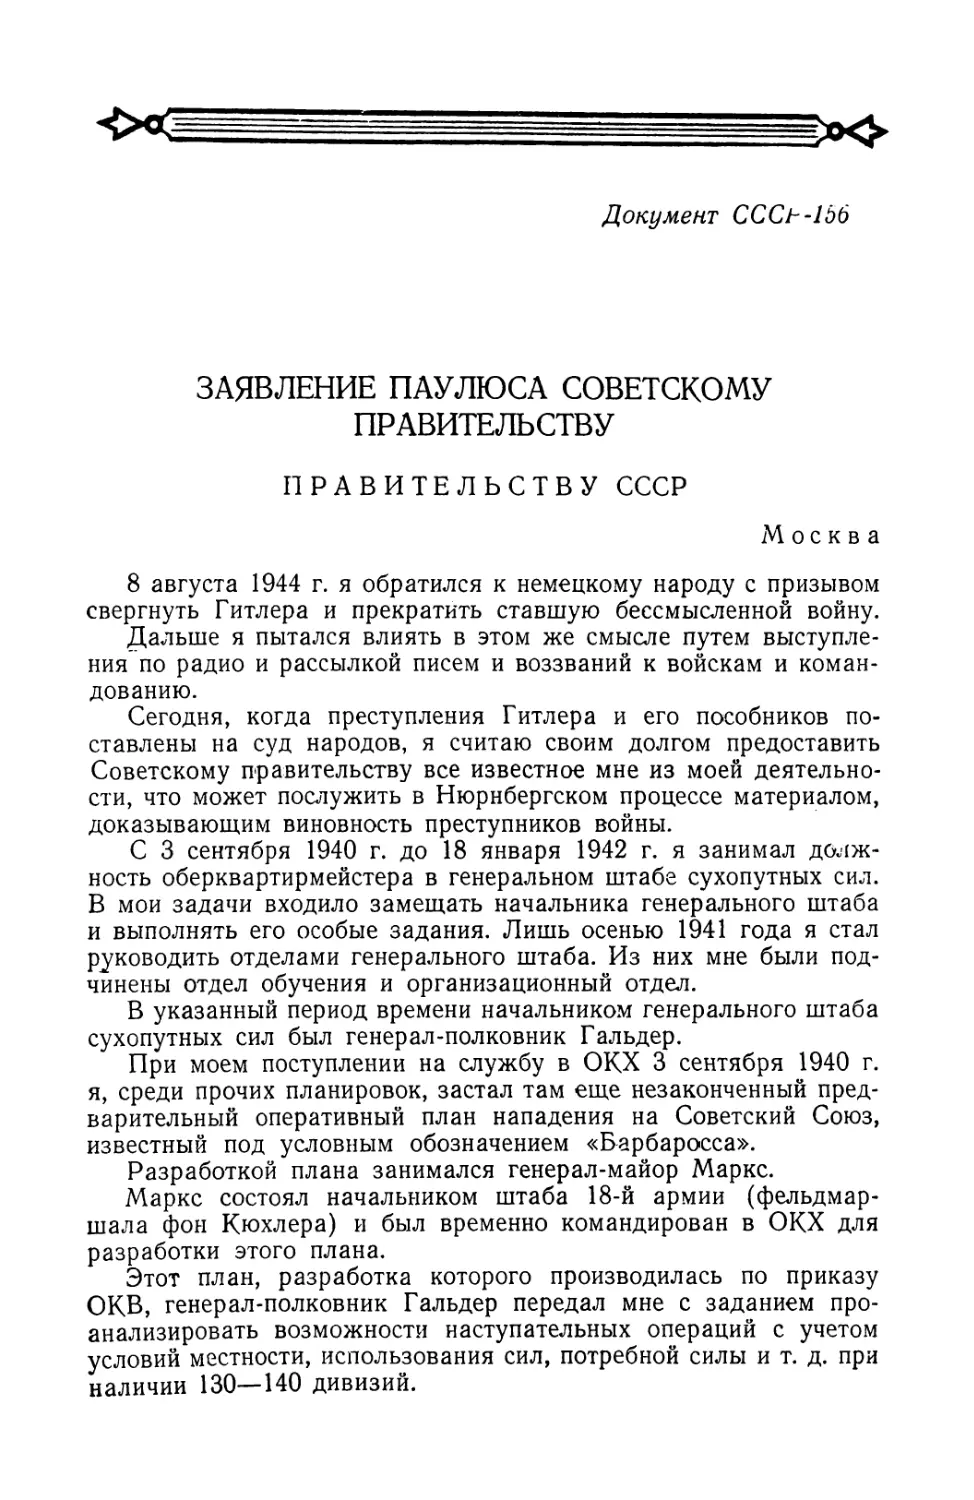 Заявление фельдмаршала Паулюса Советскому правительству от 9 января 1946 г.